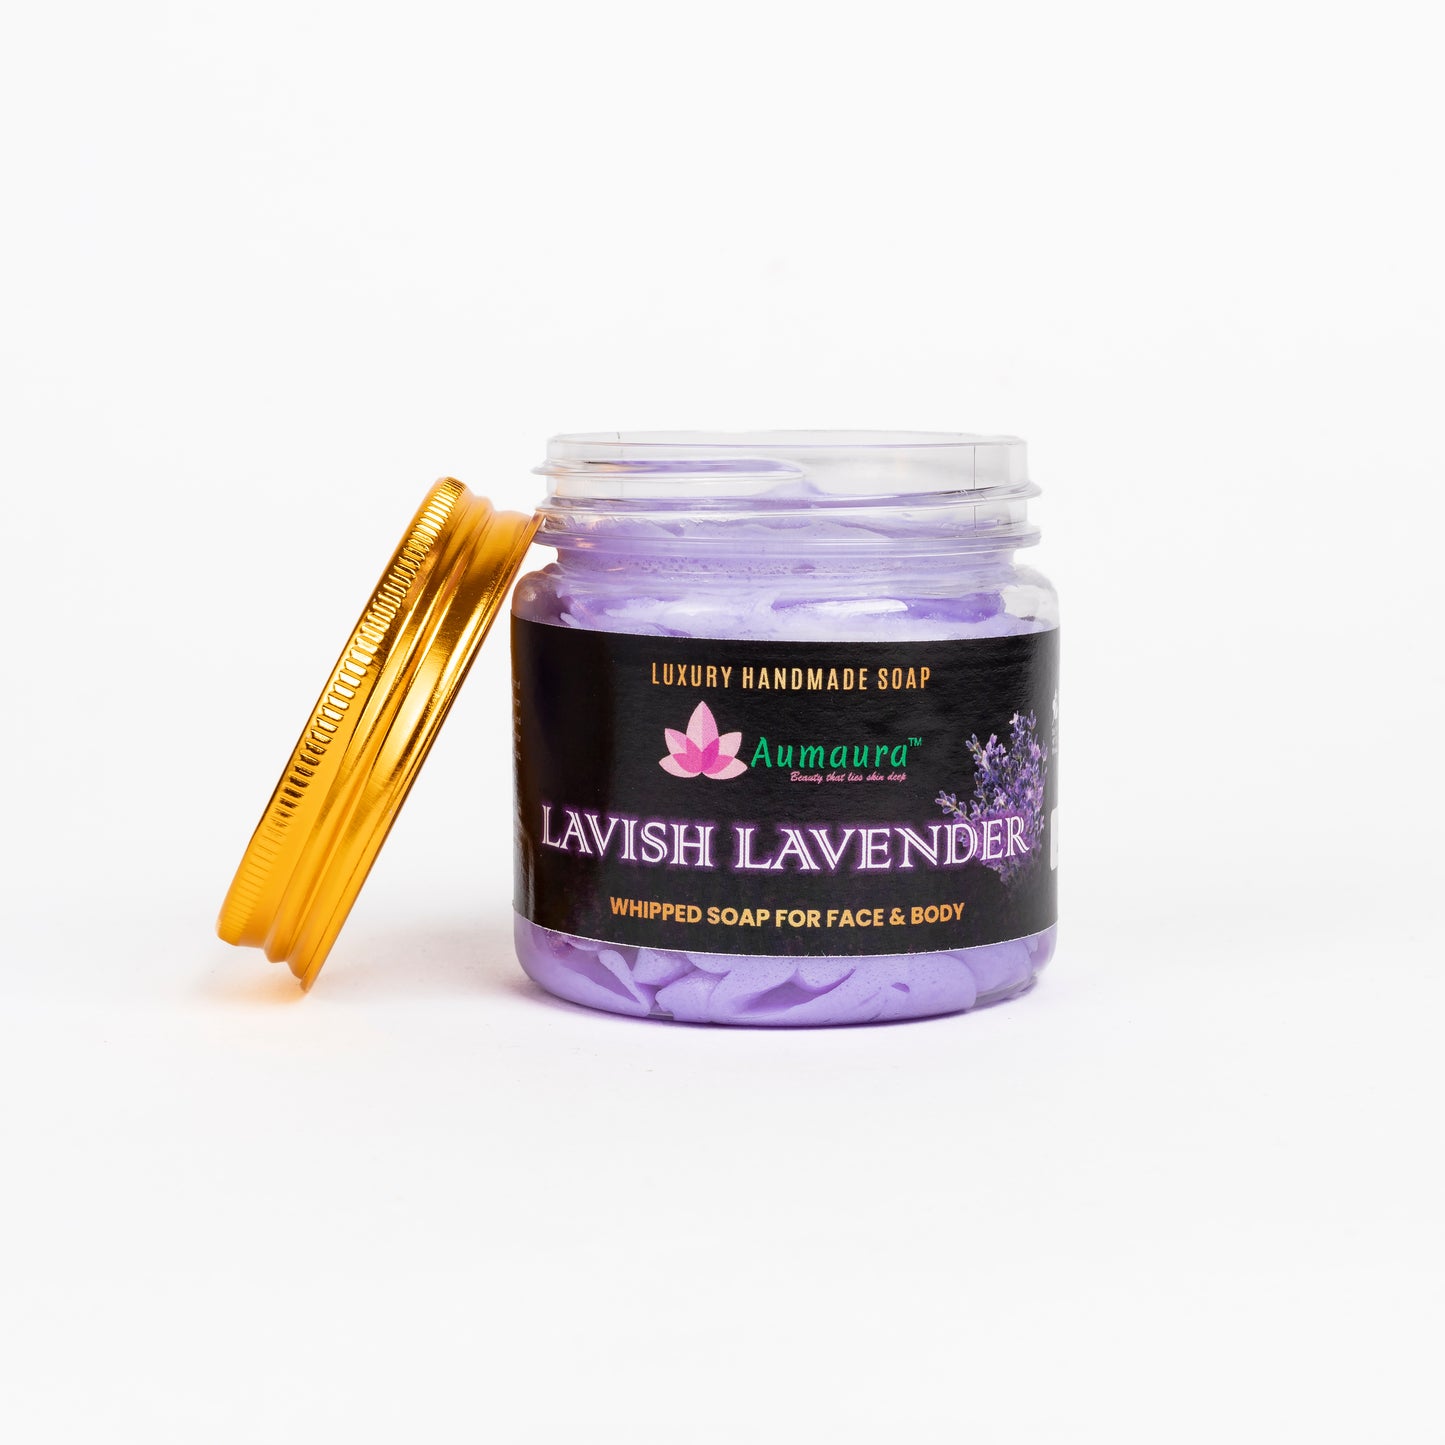 Lavish Lavender Whipped Soap